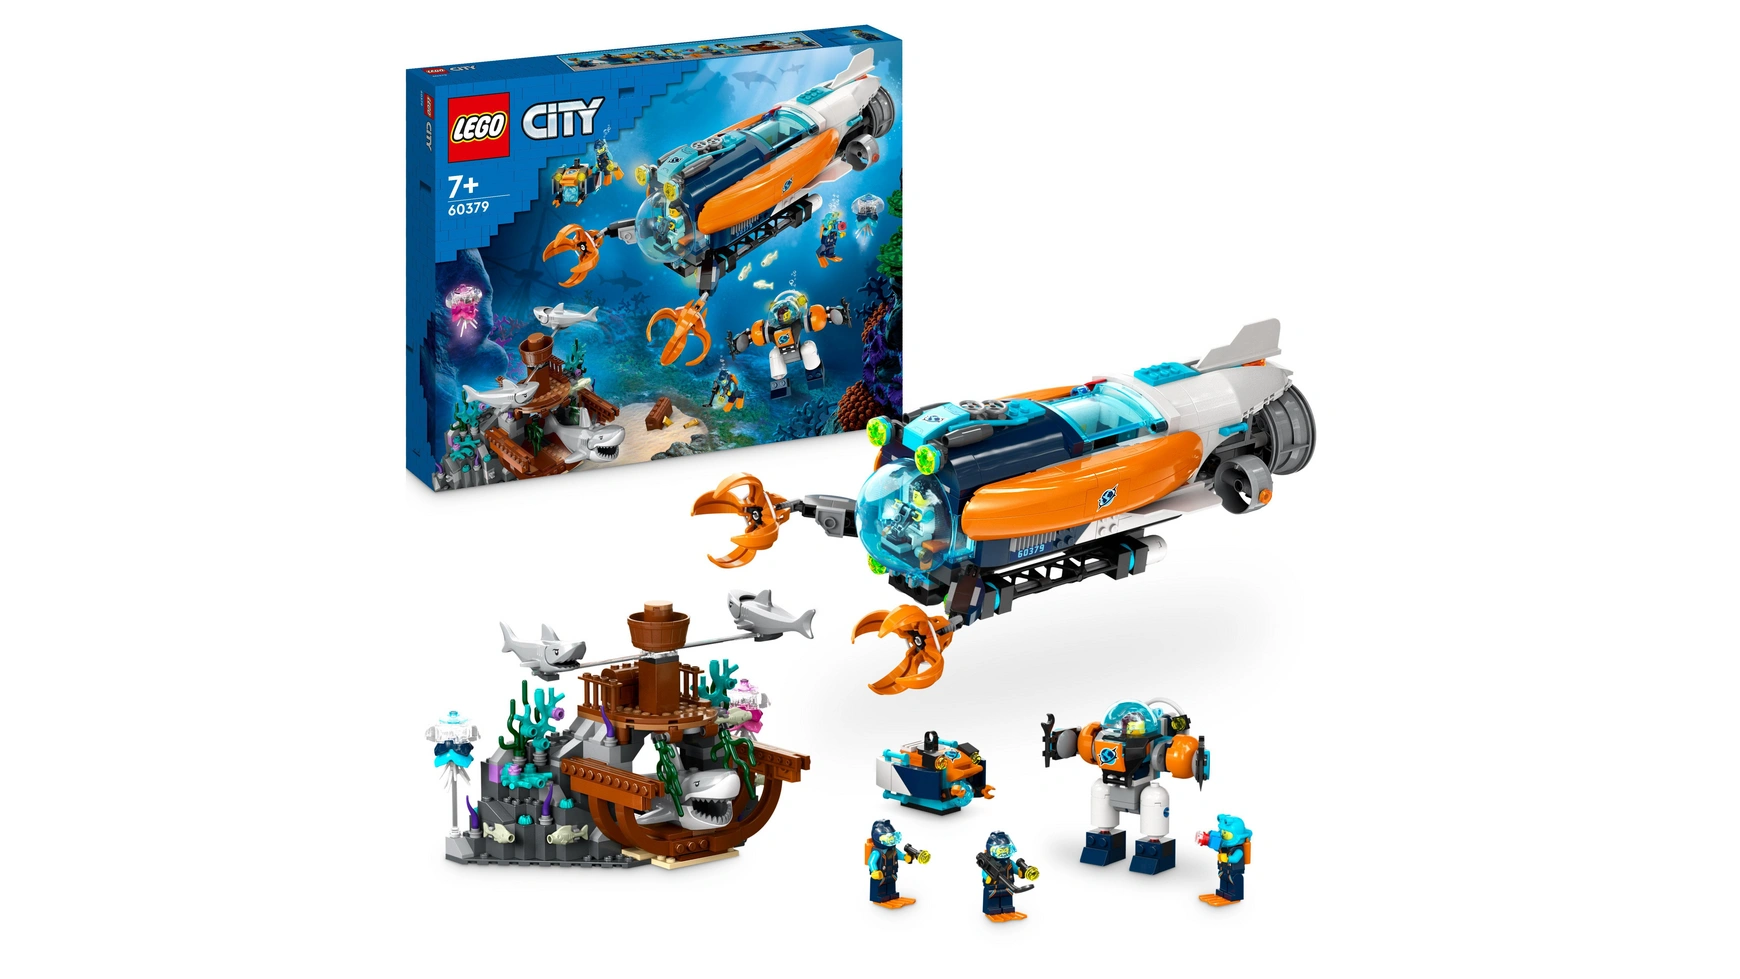 Lego City Набор игрушек Подводная лодка-исследователь с дроном и мехом lego city космический мех набор с игрушками роботами для детей от 6 лет и старше